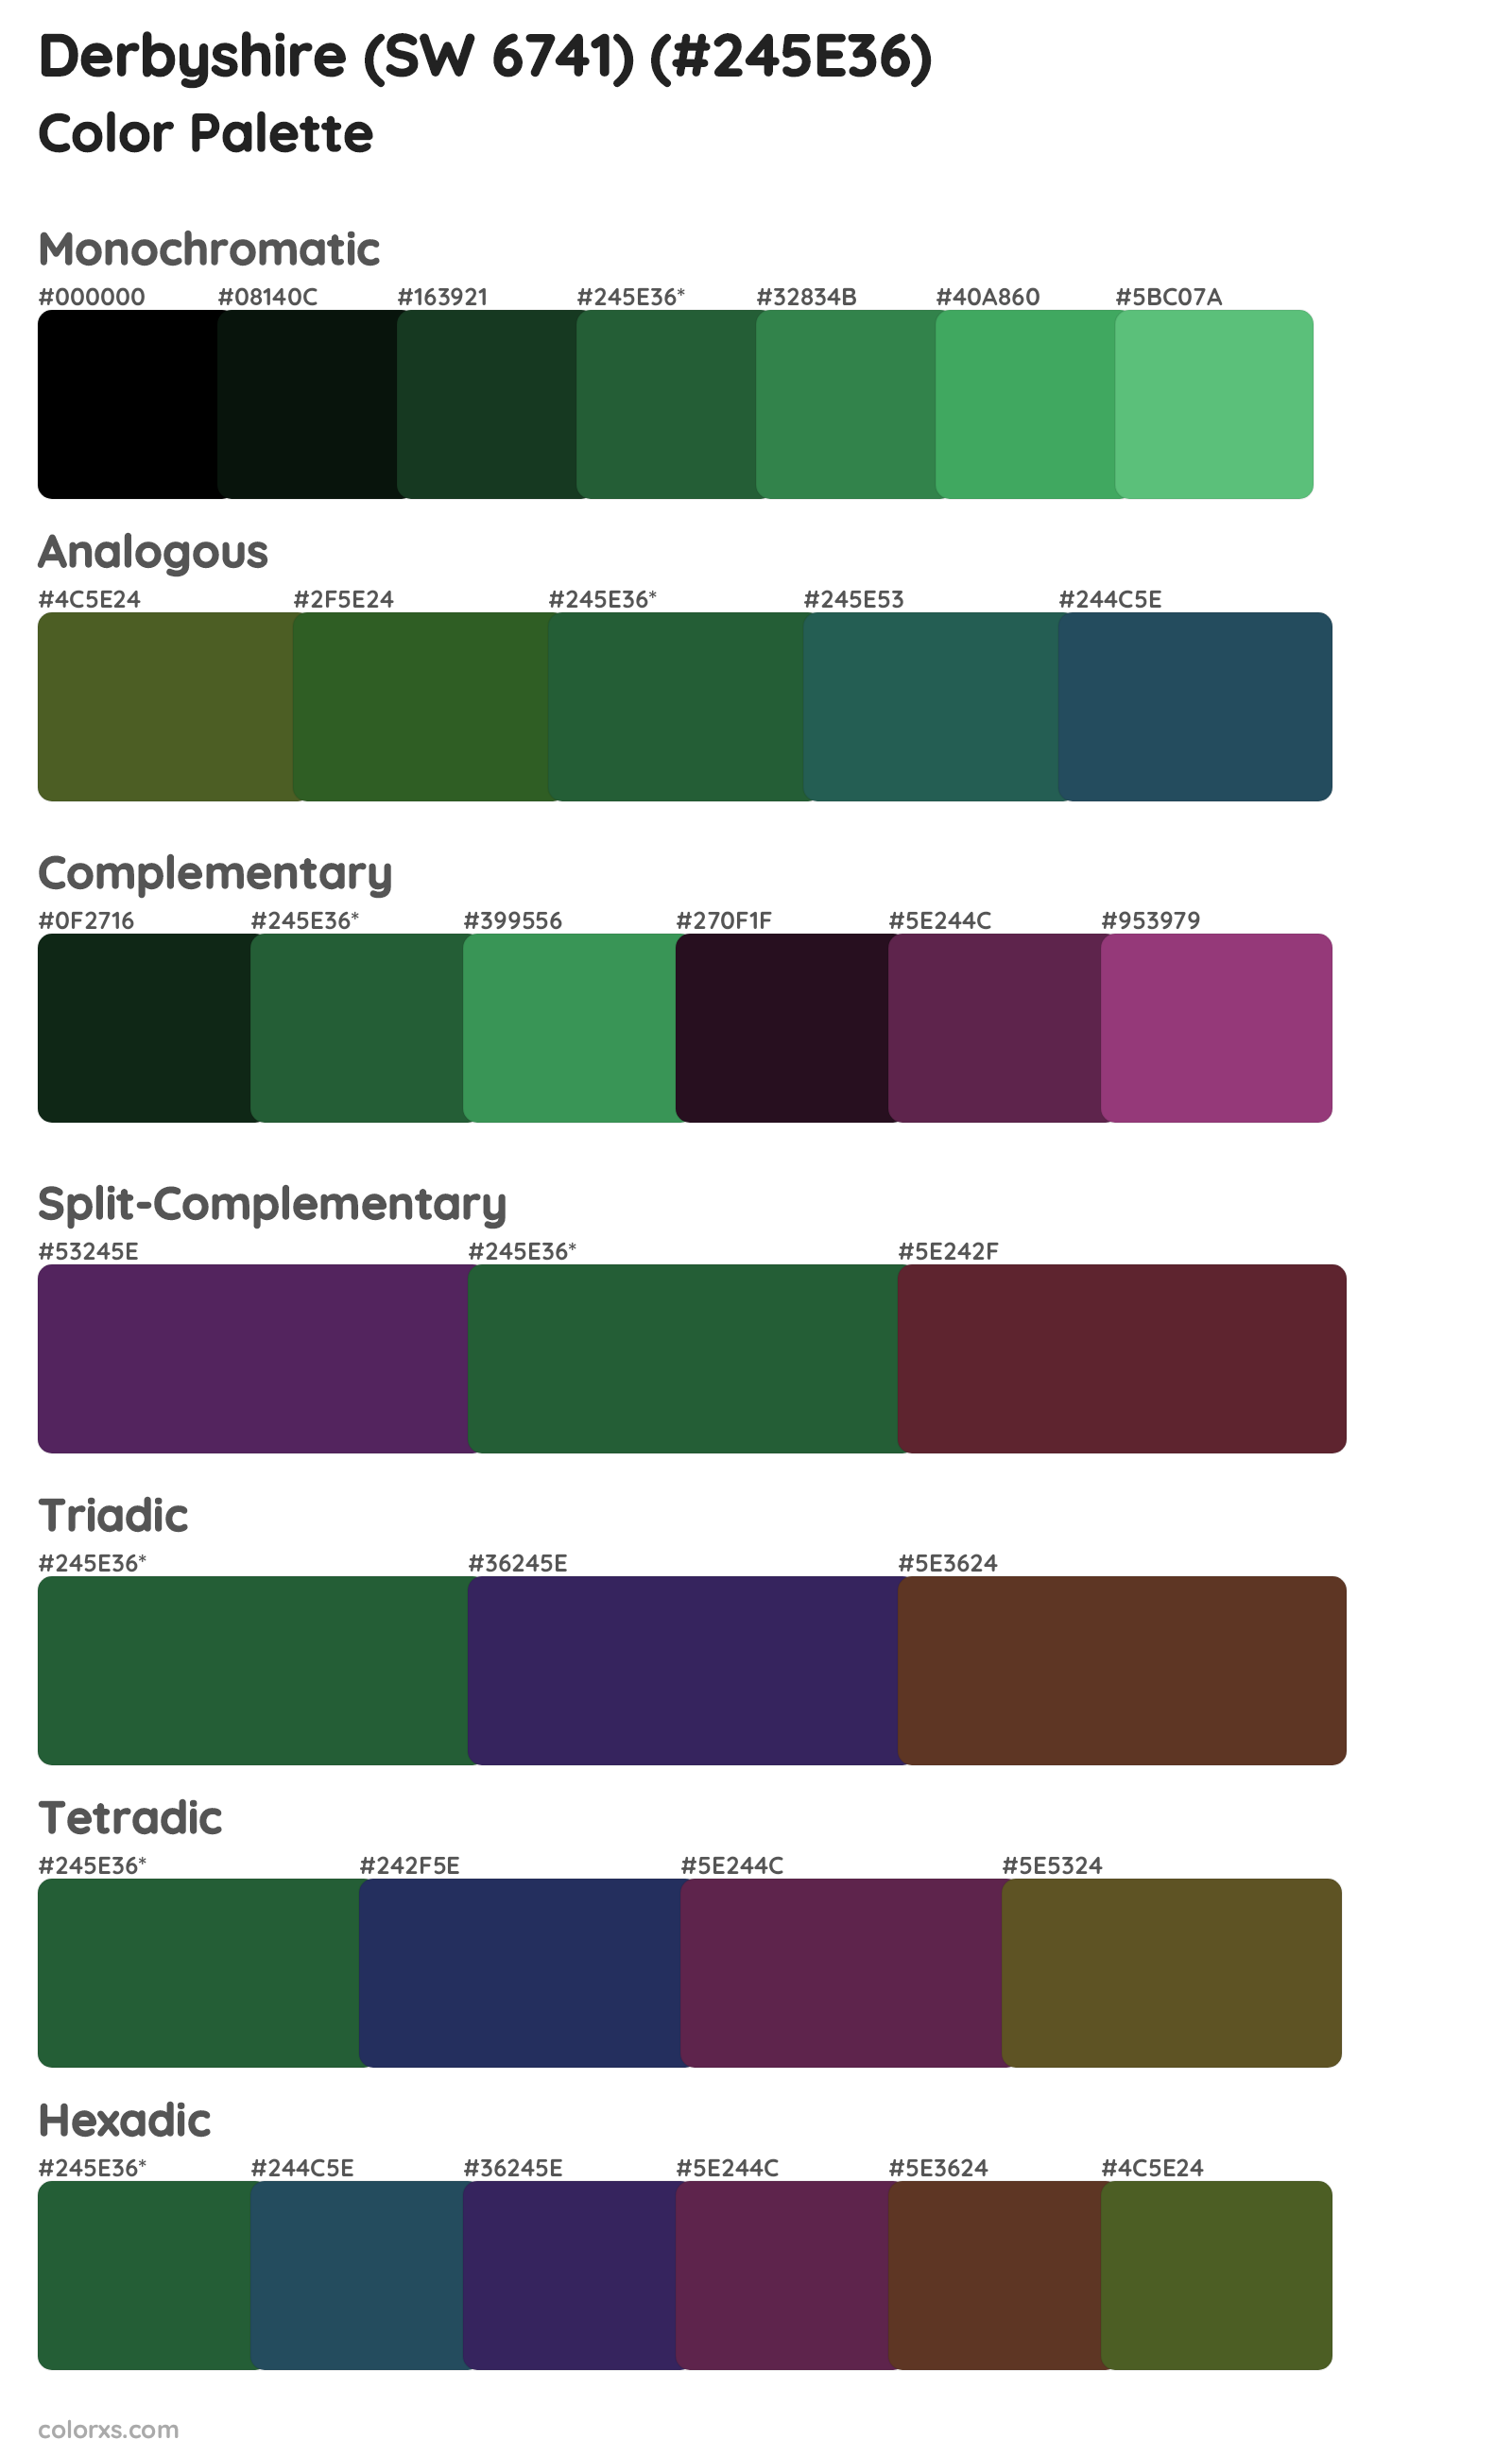 Derbyshire (SW 6741) Color Scheme Palettes